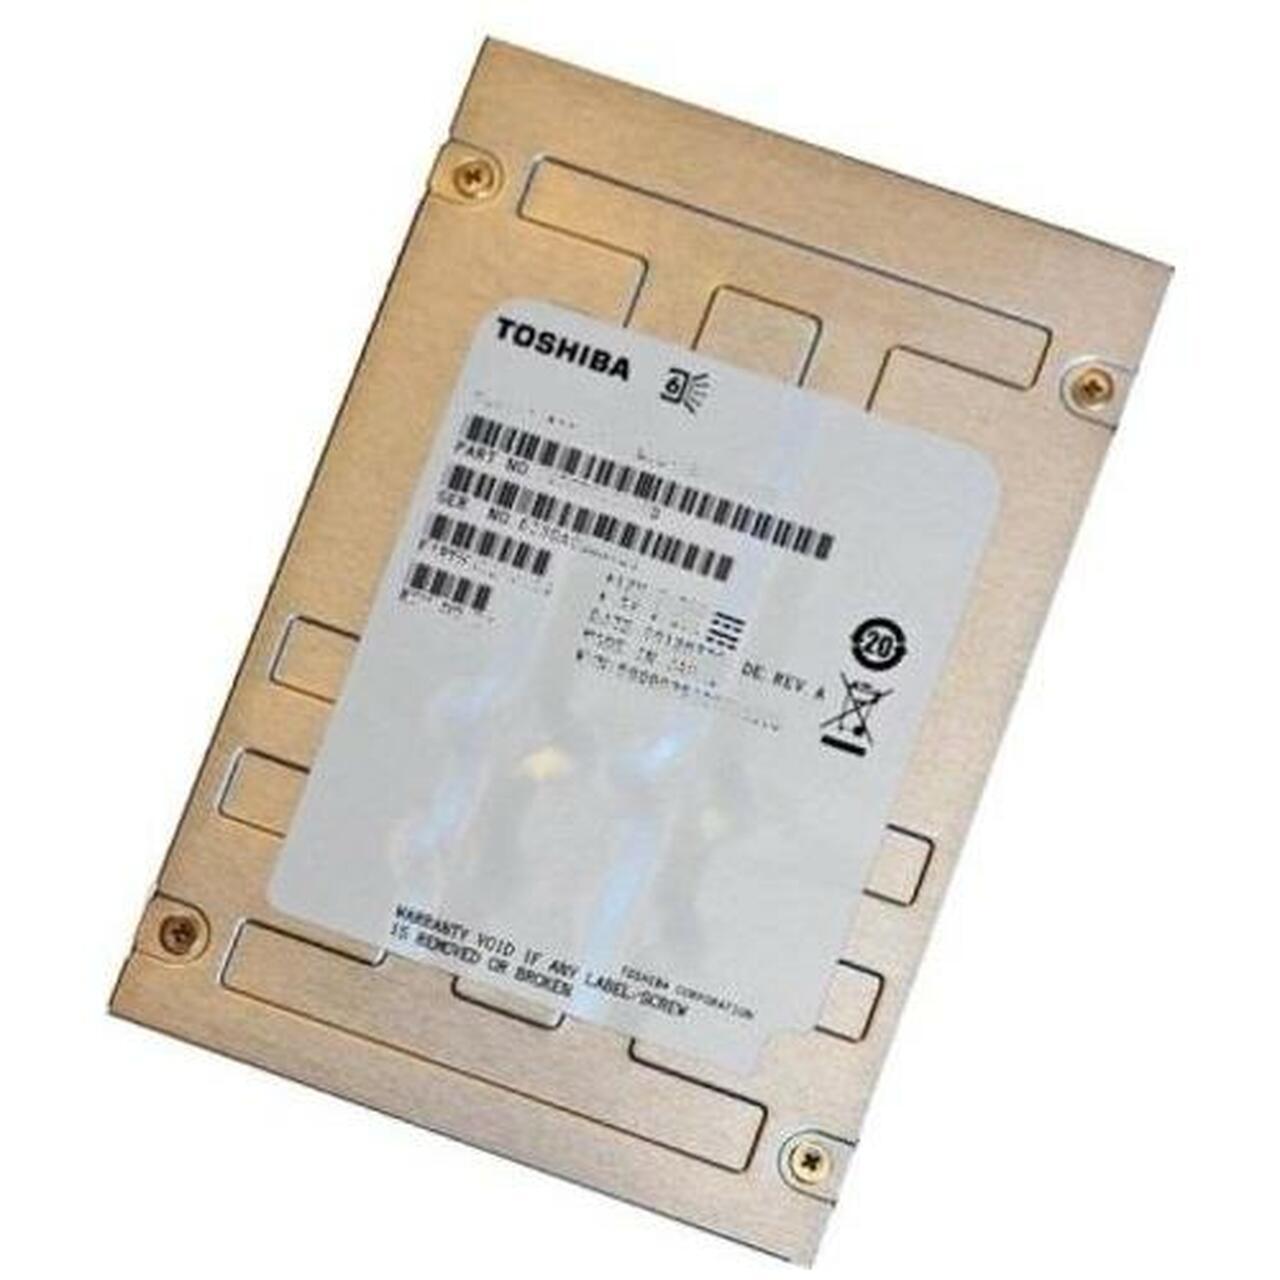 Toshiba PX02SMF040 400GB 2.5" SAS3 12Gbps SSD